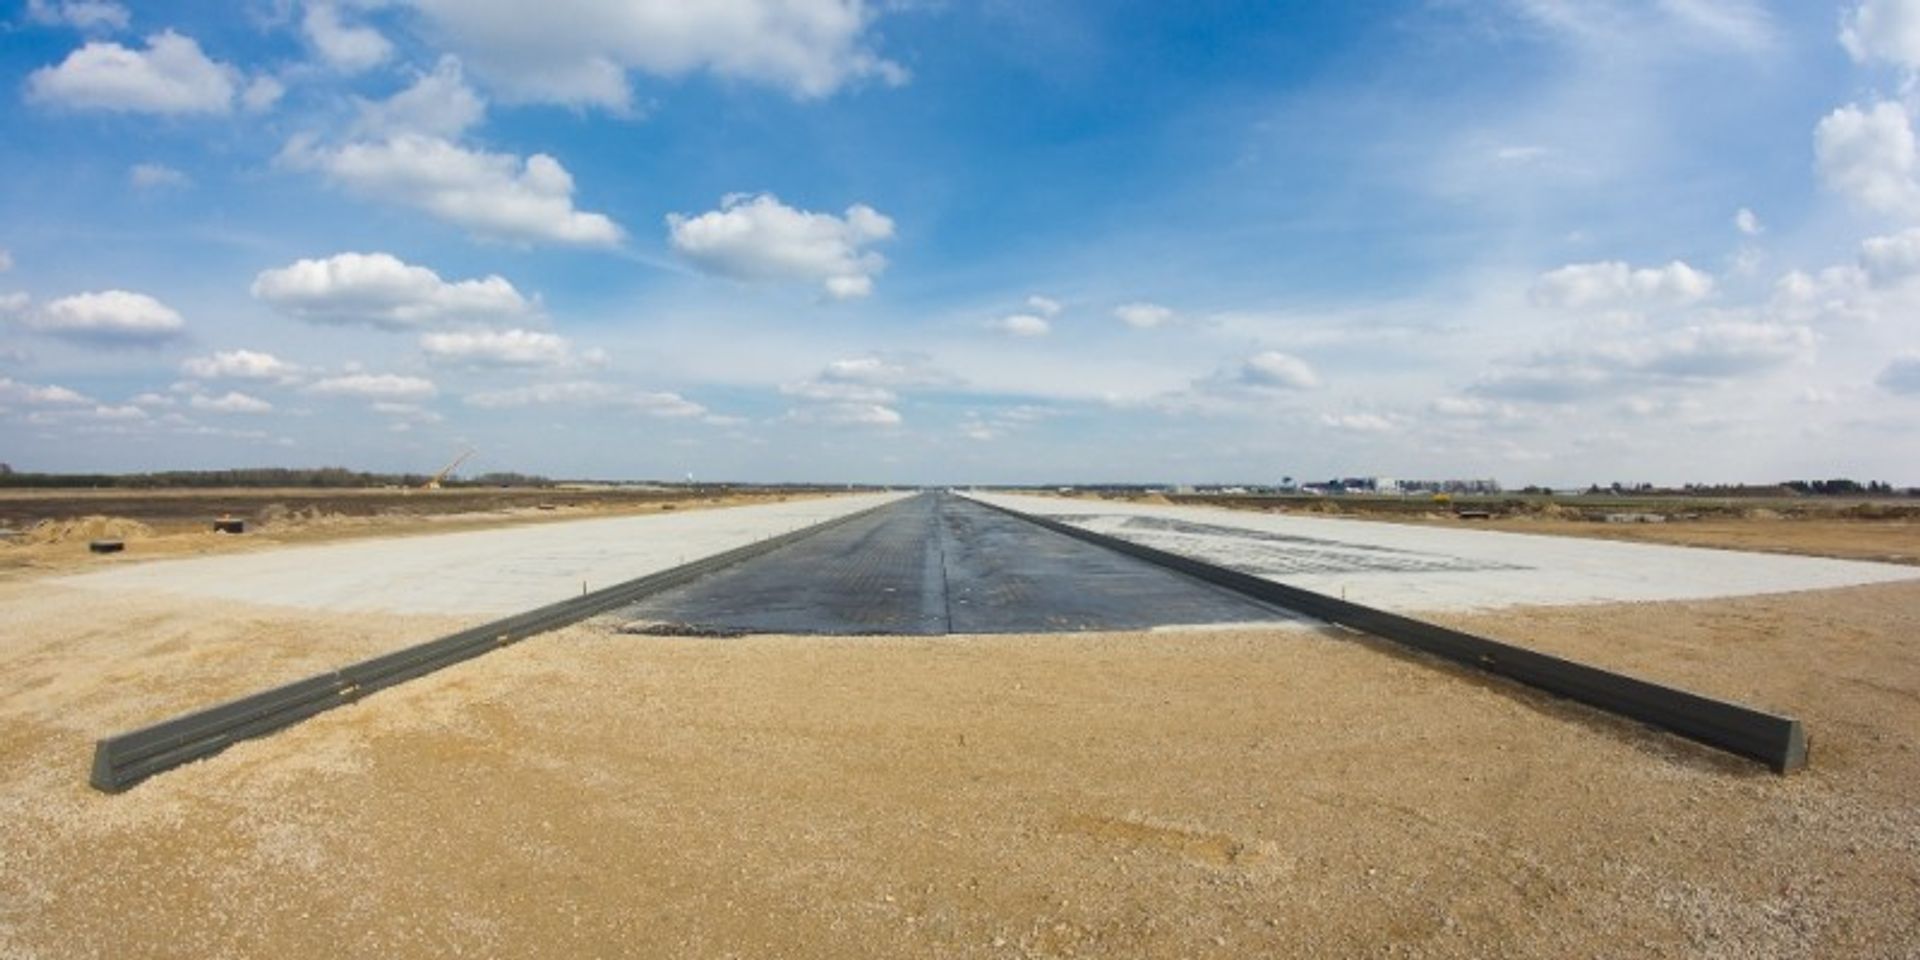  Katowice Airport: w kwietniu rozpocznie się betonowanie drugiej warstwy nawierzchni nowej drogi startowej